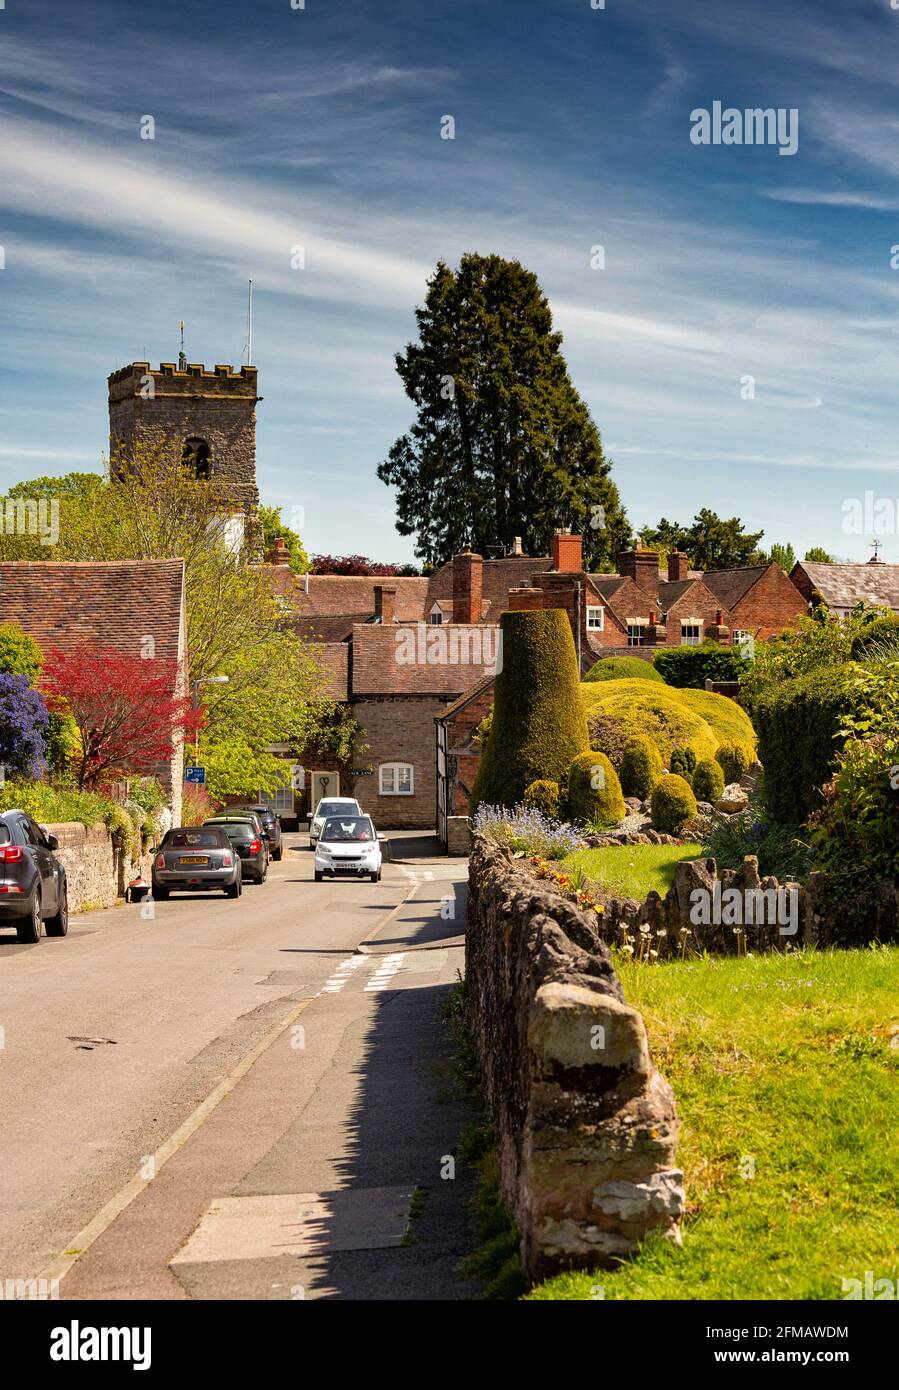 Much Wenlock, mit einer Bevölkerung von rund 3,000 Einwohnern, ist eine mittelalterliche Stadt und Gemeinde in Shropshire, England. Stockfoto